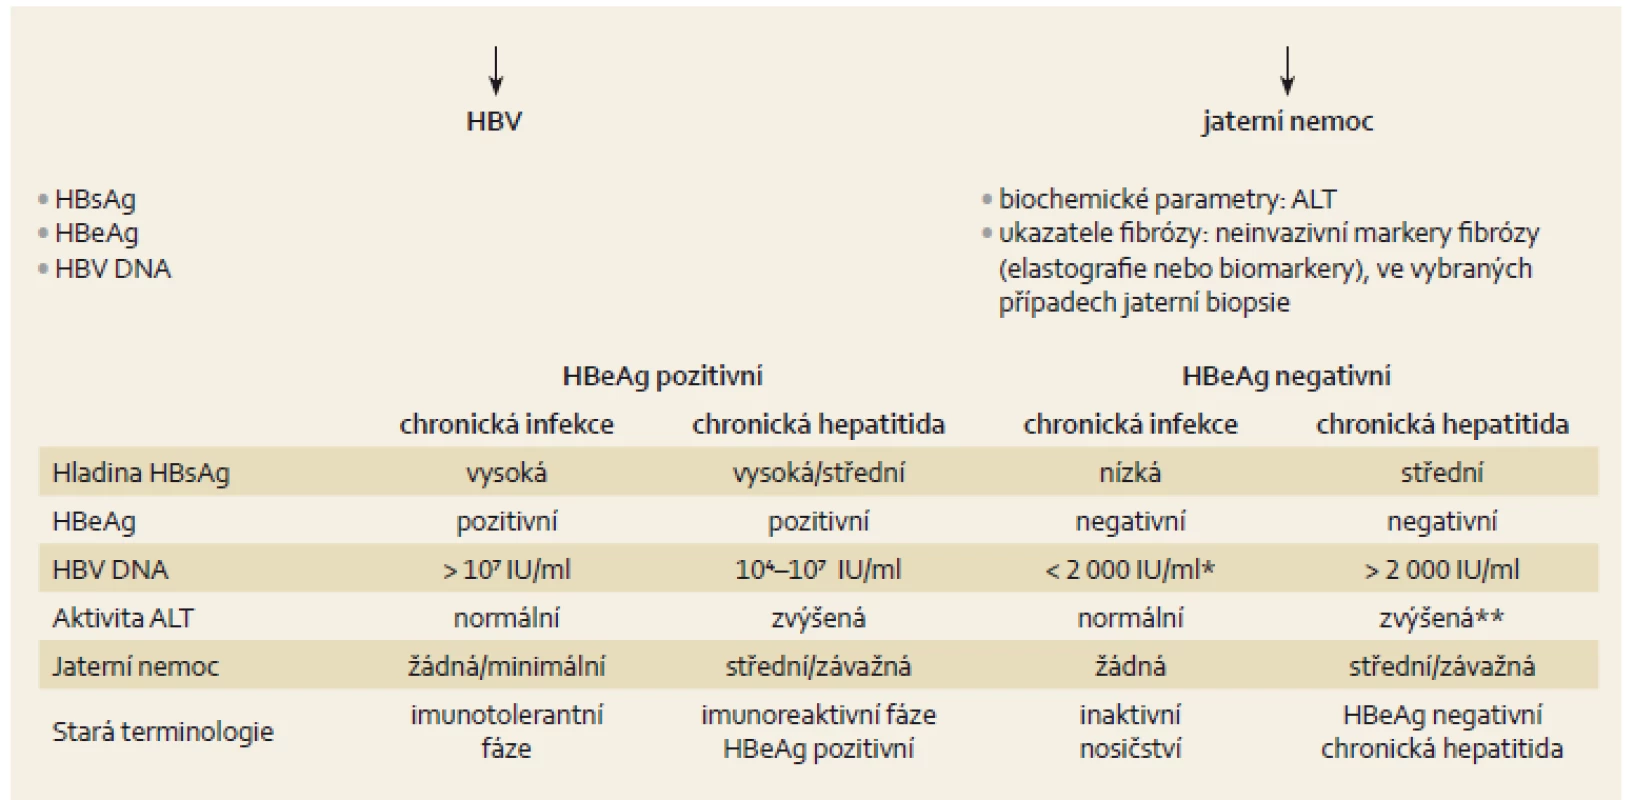 Přirozený vývoj a diagnostika chronické infekce HBV [3].
Fig. 1. Natural development and diagnosis of chronic HBV infection [3].